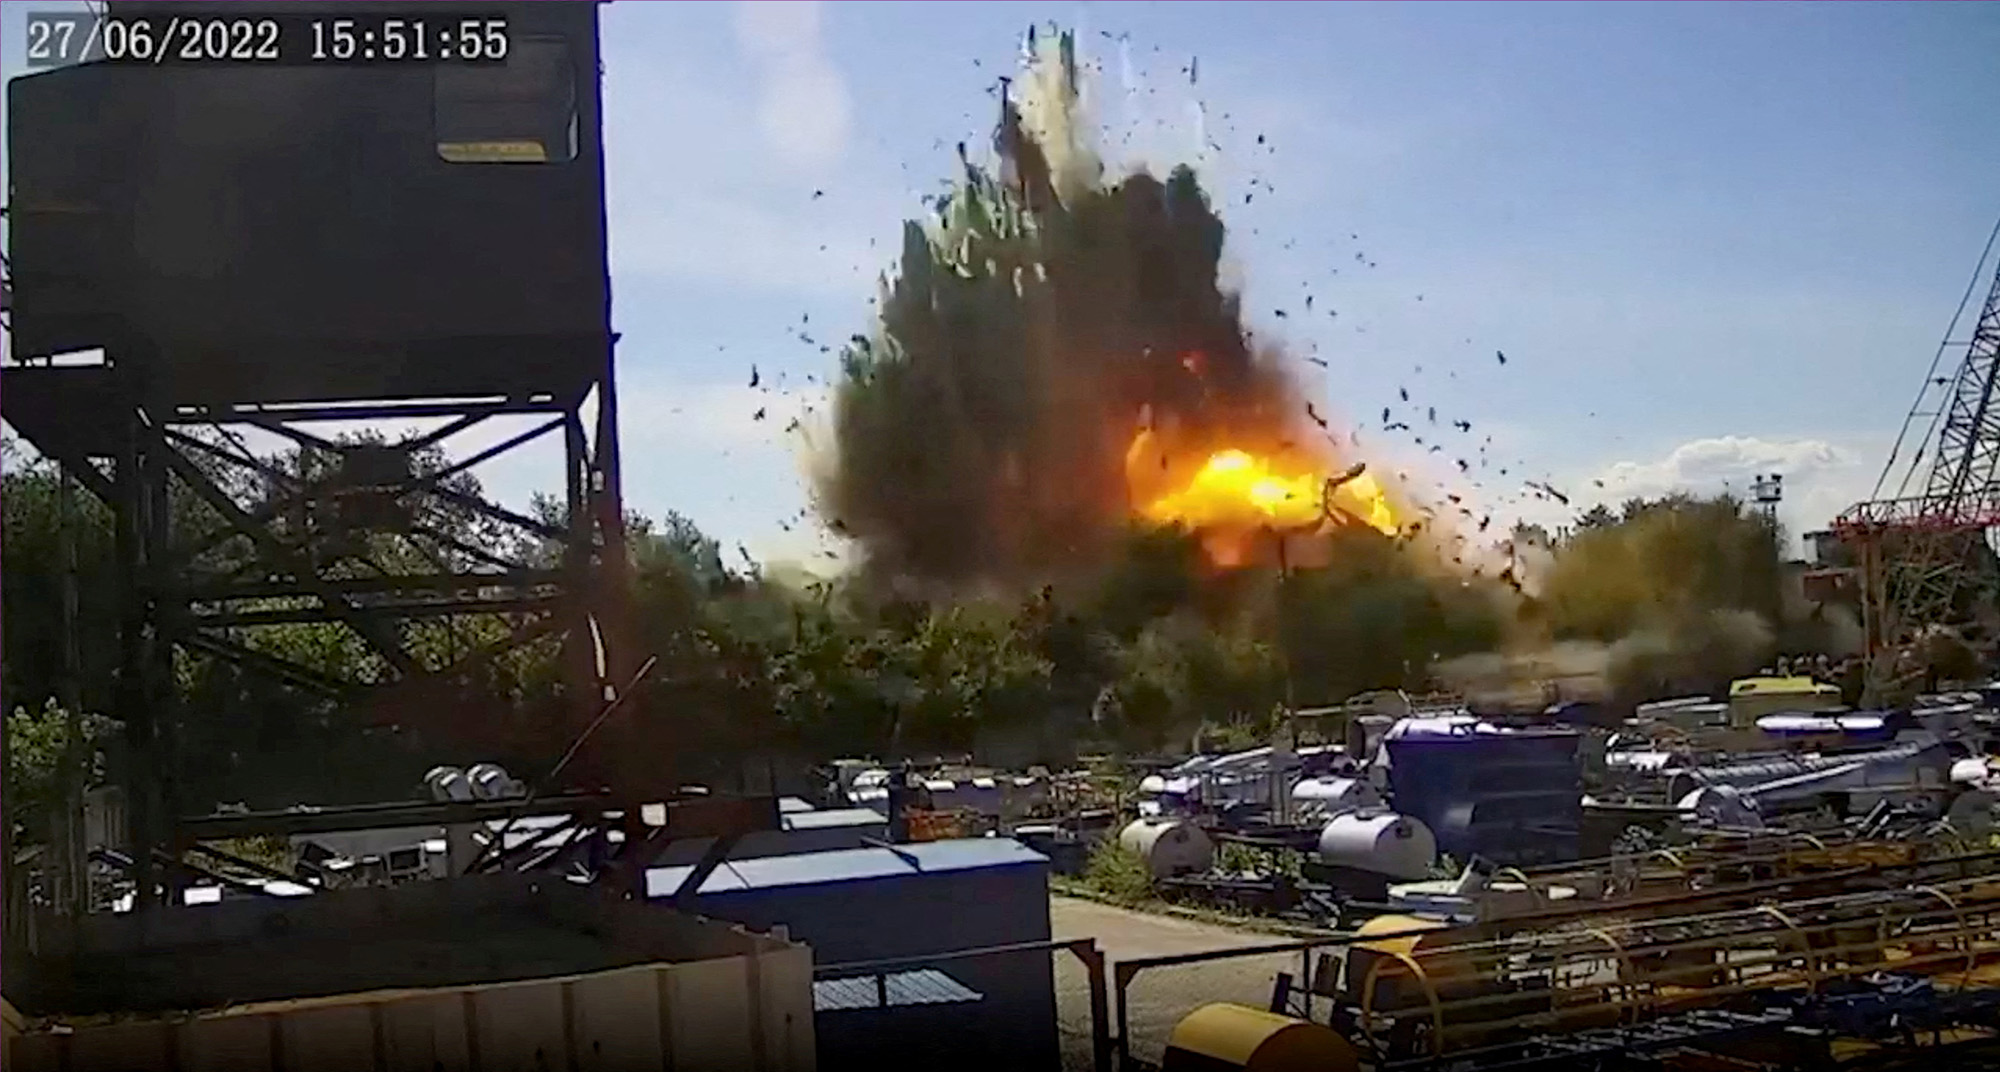 Una vista de la explosión en el centro comercial de Kremenchuk, Ucrania, en esta imagen fija tomada de un video de CCTV publicado el 28 de junio.